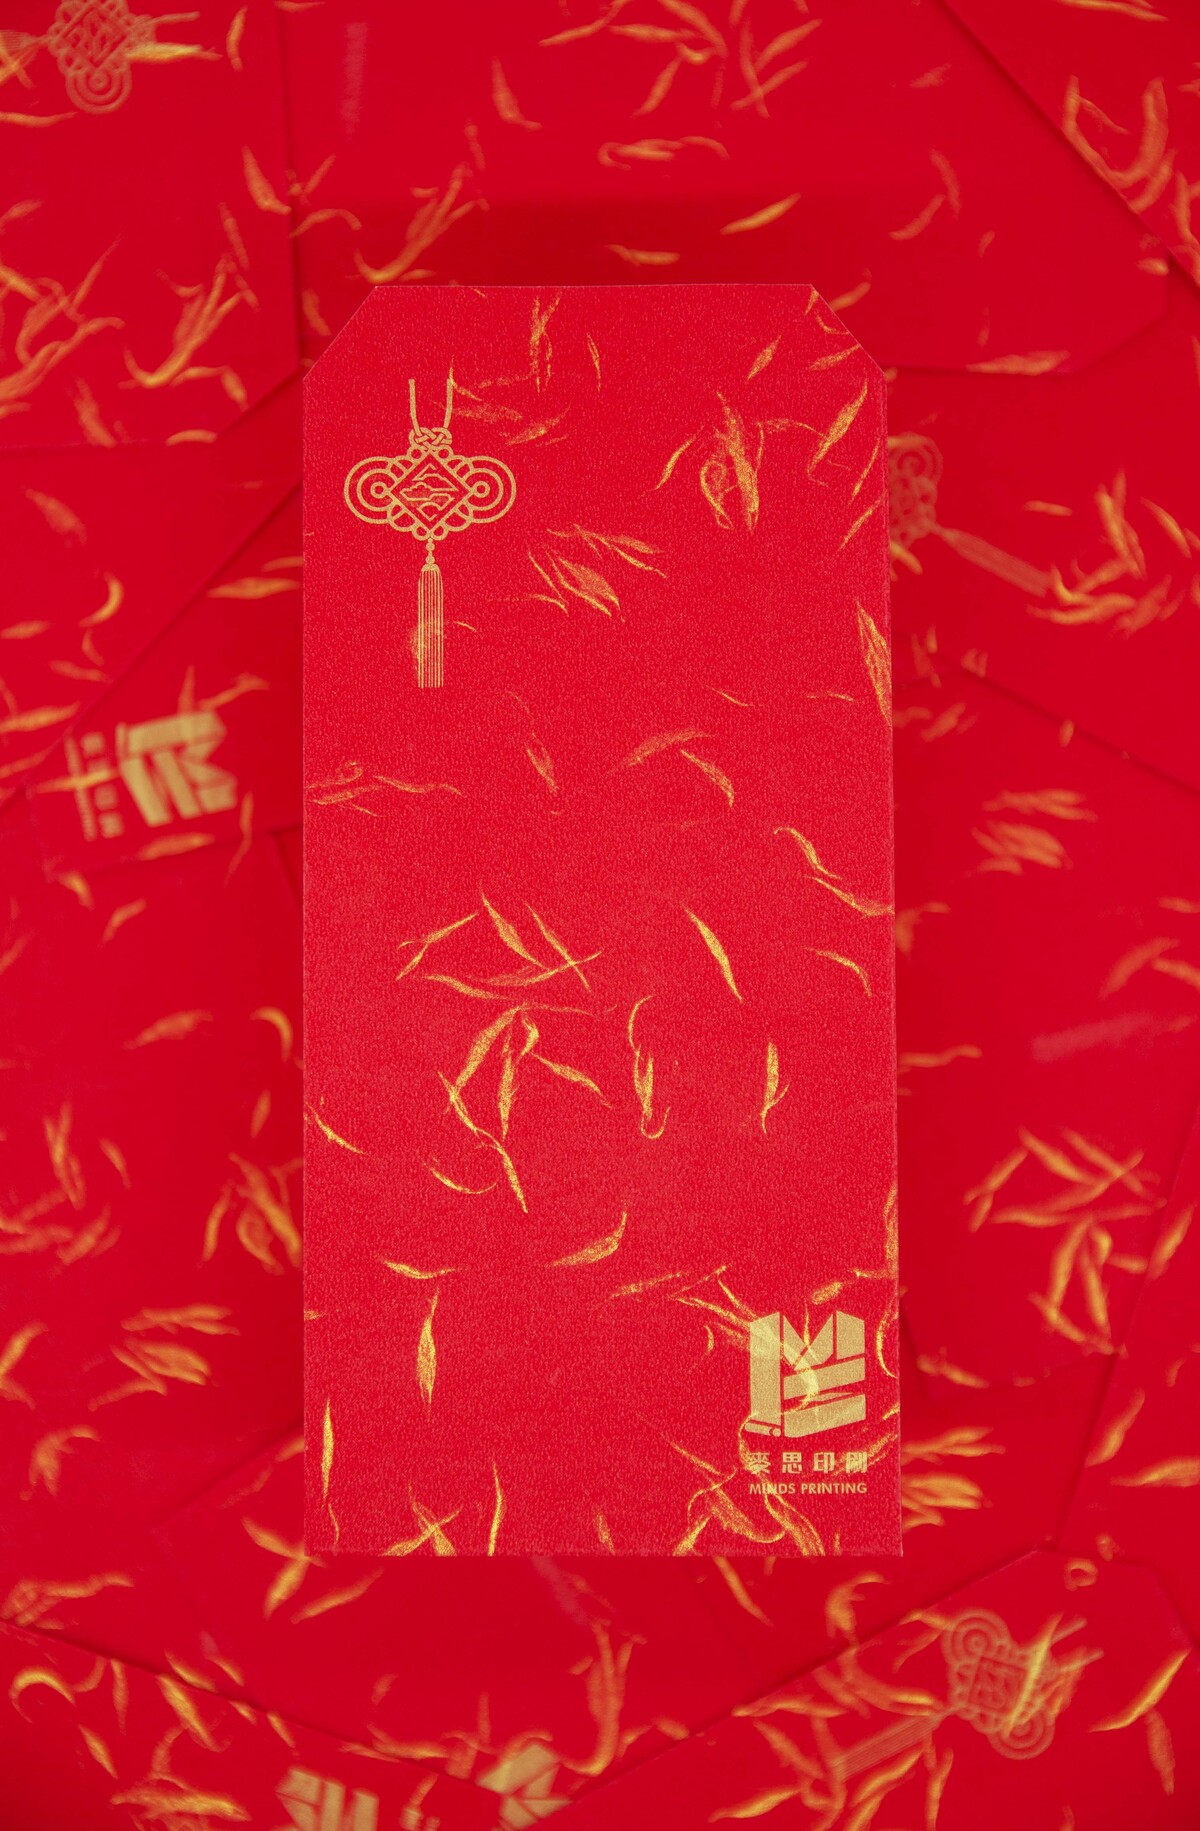 【印刷案例】Riso紅包袋-1